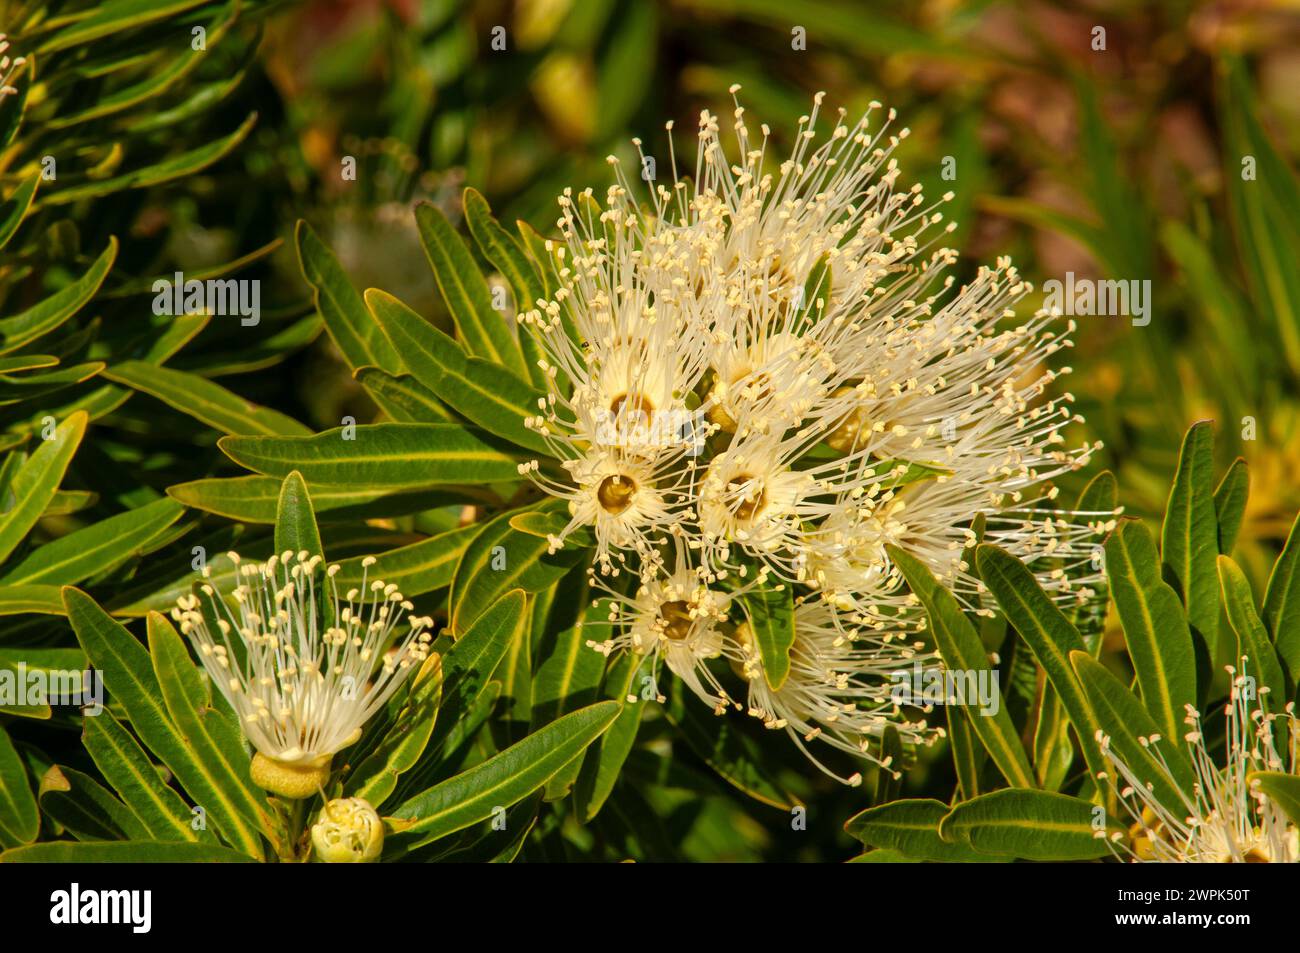 Sydney Australia, flowers of a Xanthostemon verticillatus or Little Penda an australian native Stock Photo